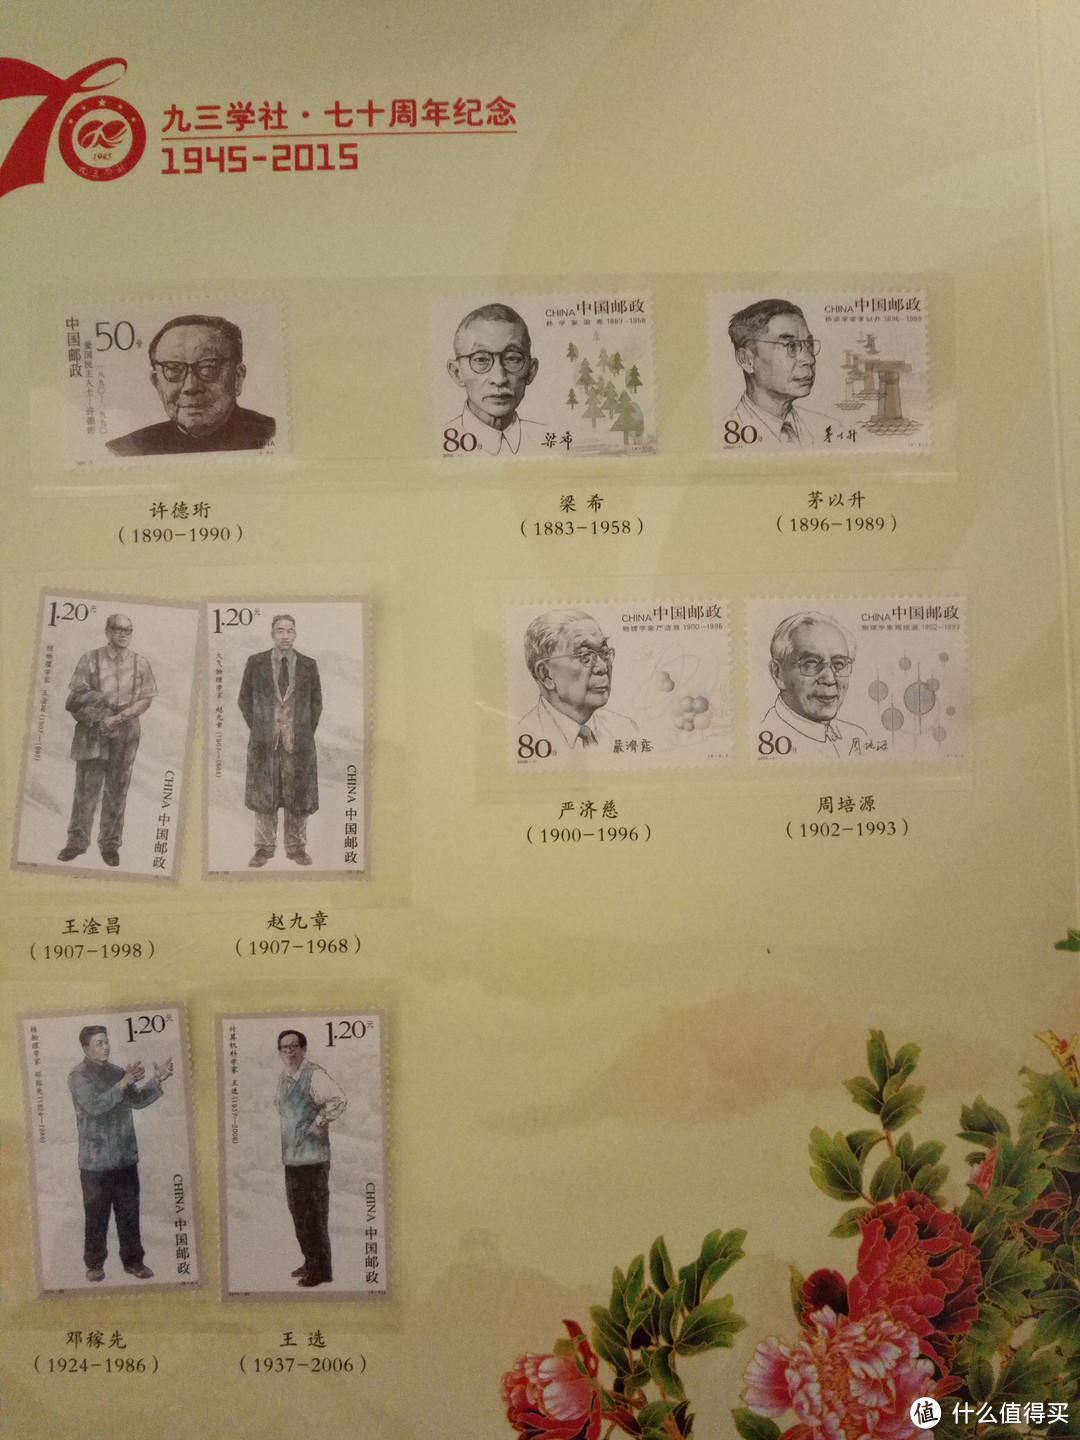 九三学社70周年纪念邮票晒物